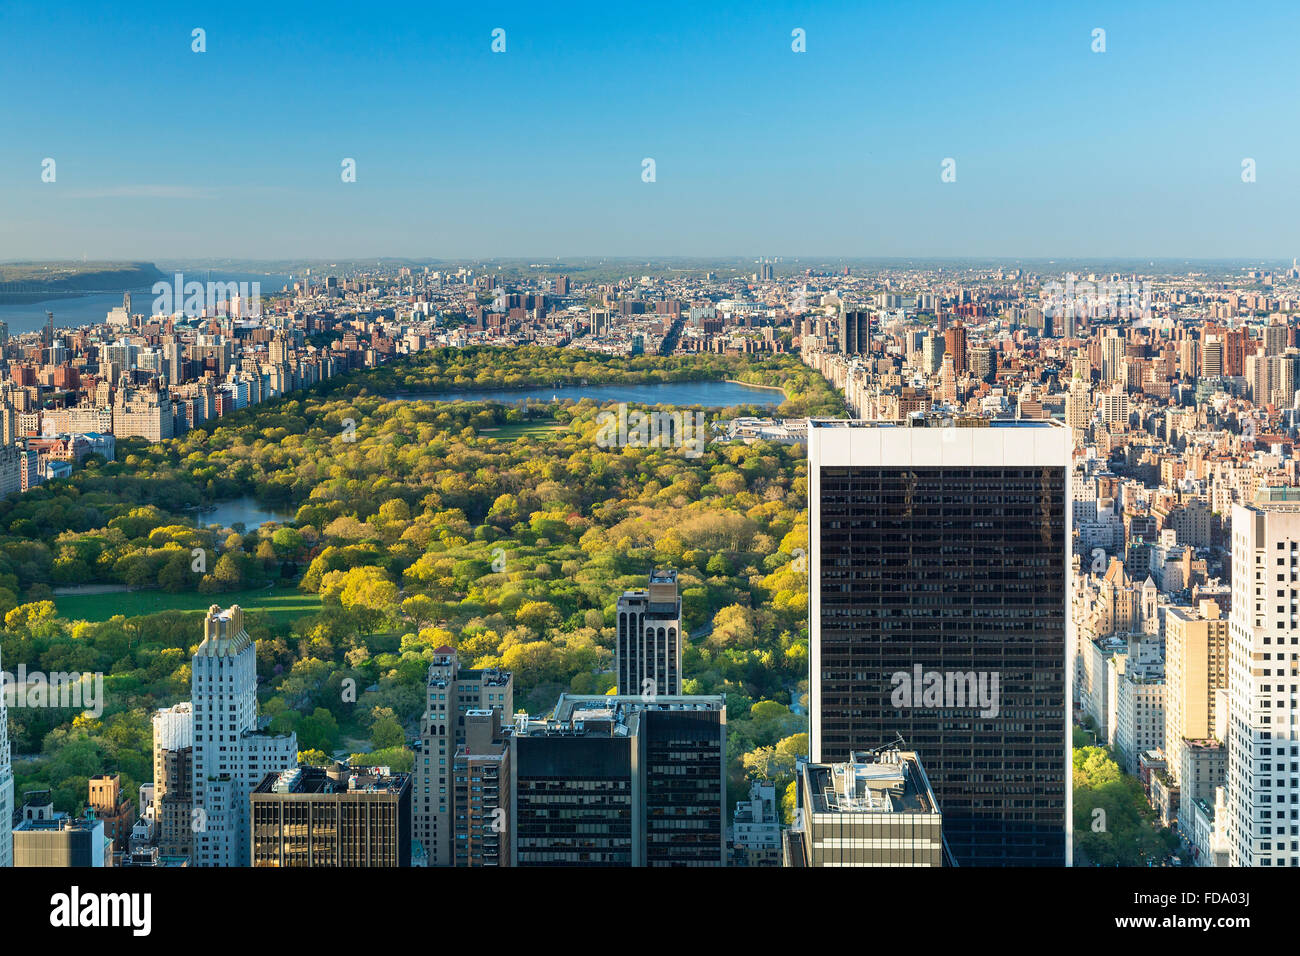 La ciudad de Nueva York con Central Park, Rockefeller Center vistas desde el mirador "Top of the Rock' Foto de stock